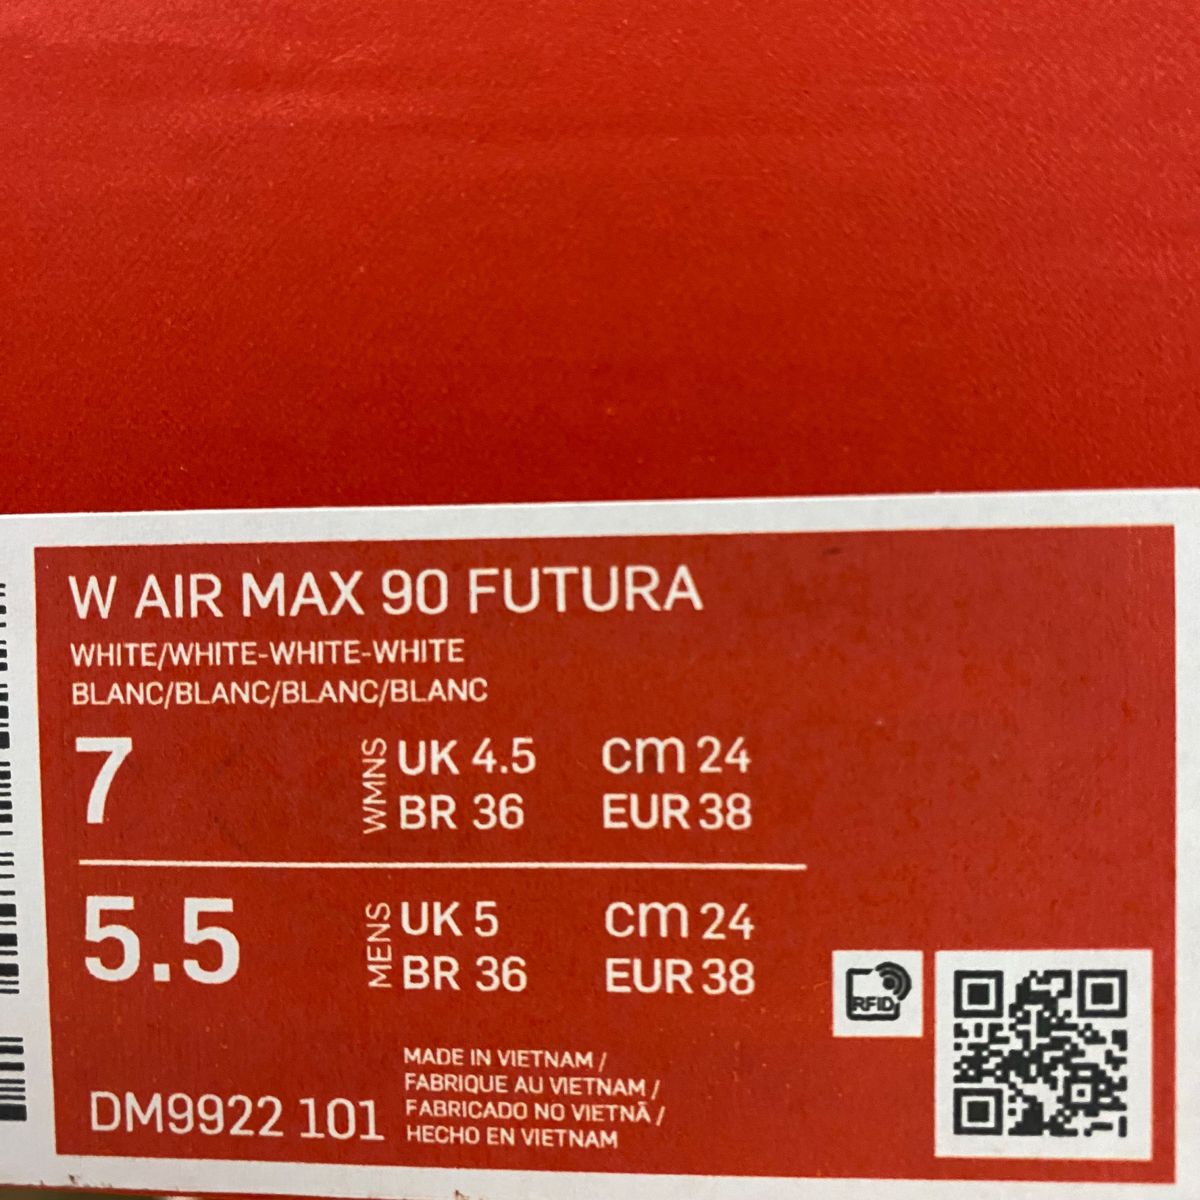 24cm W AIR MAX 90 FUTURA